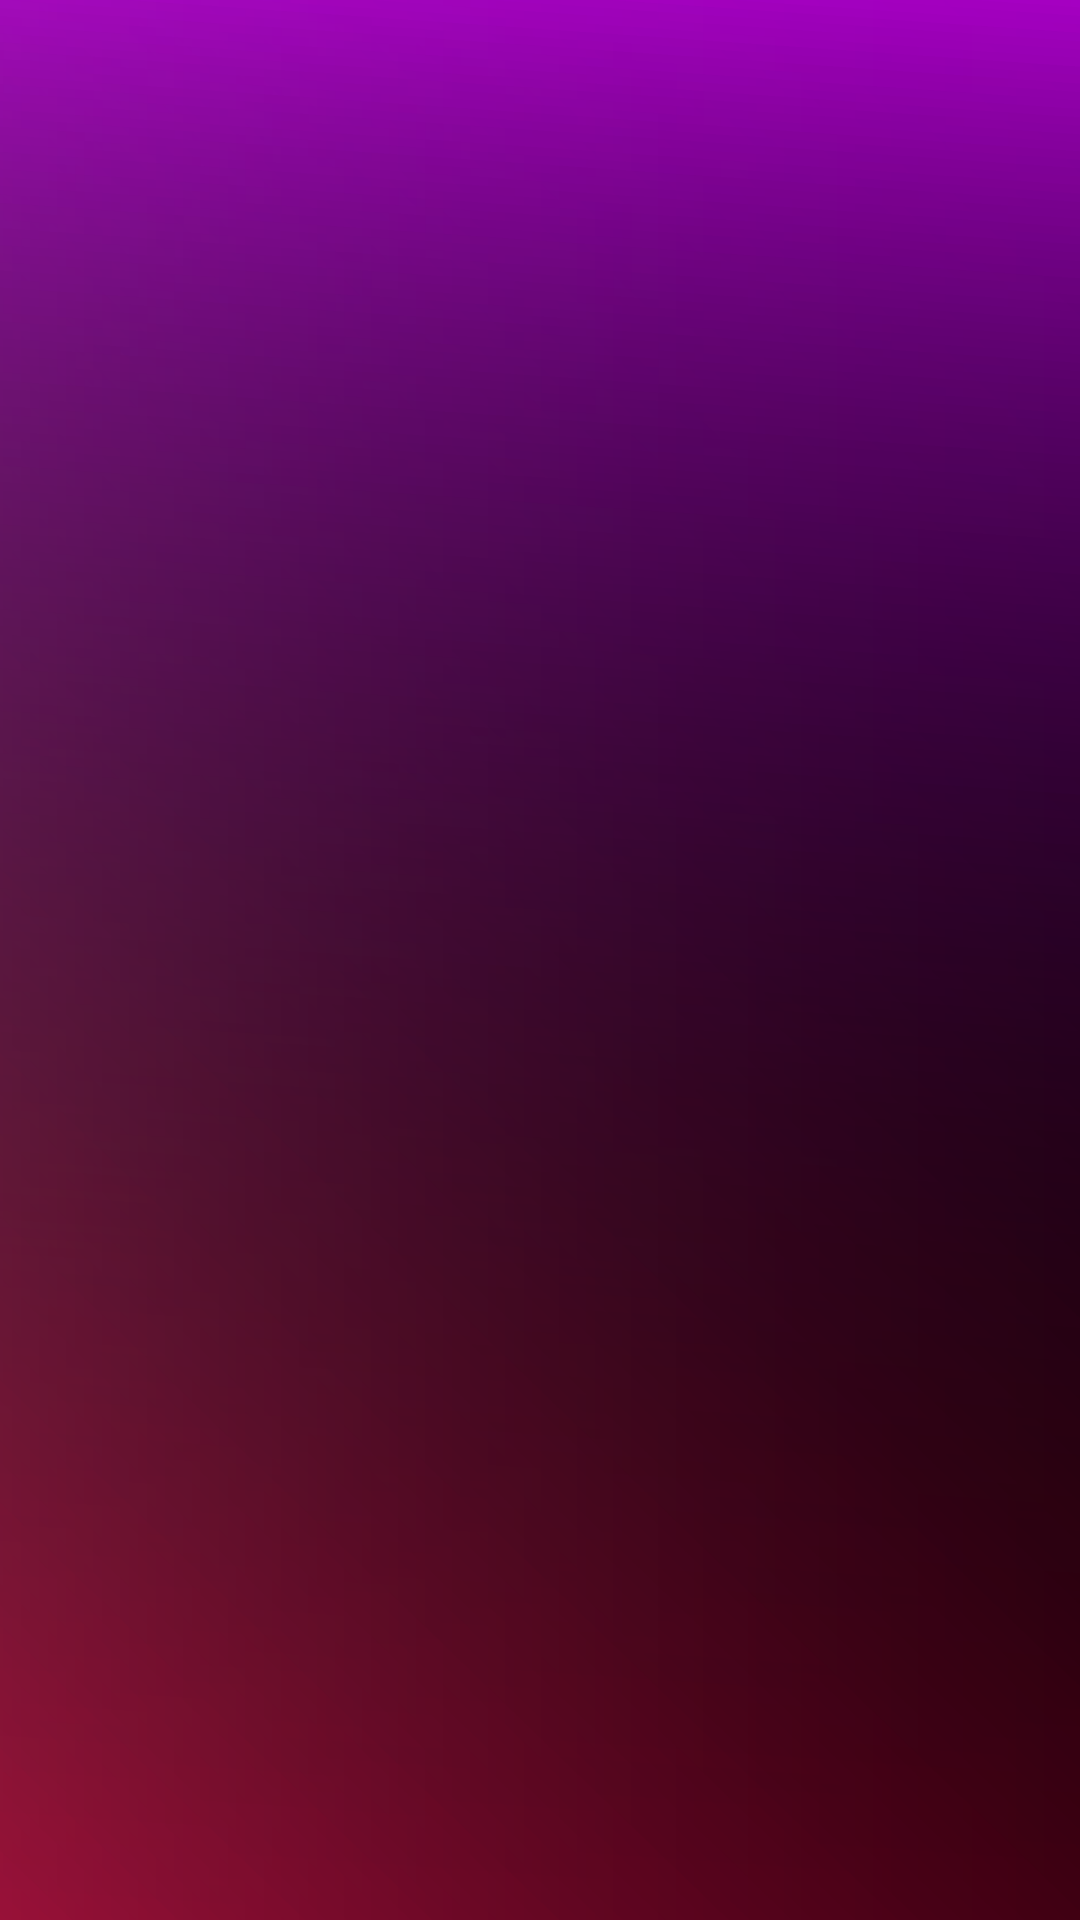 Violet Gradient - Purple Gradient Wallpaper Iphone - HD Wallpaper 